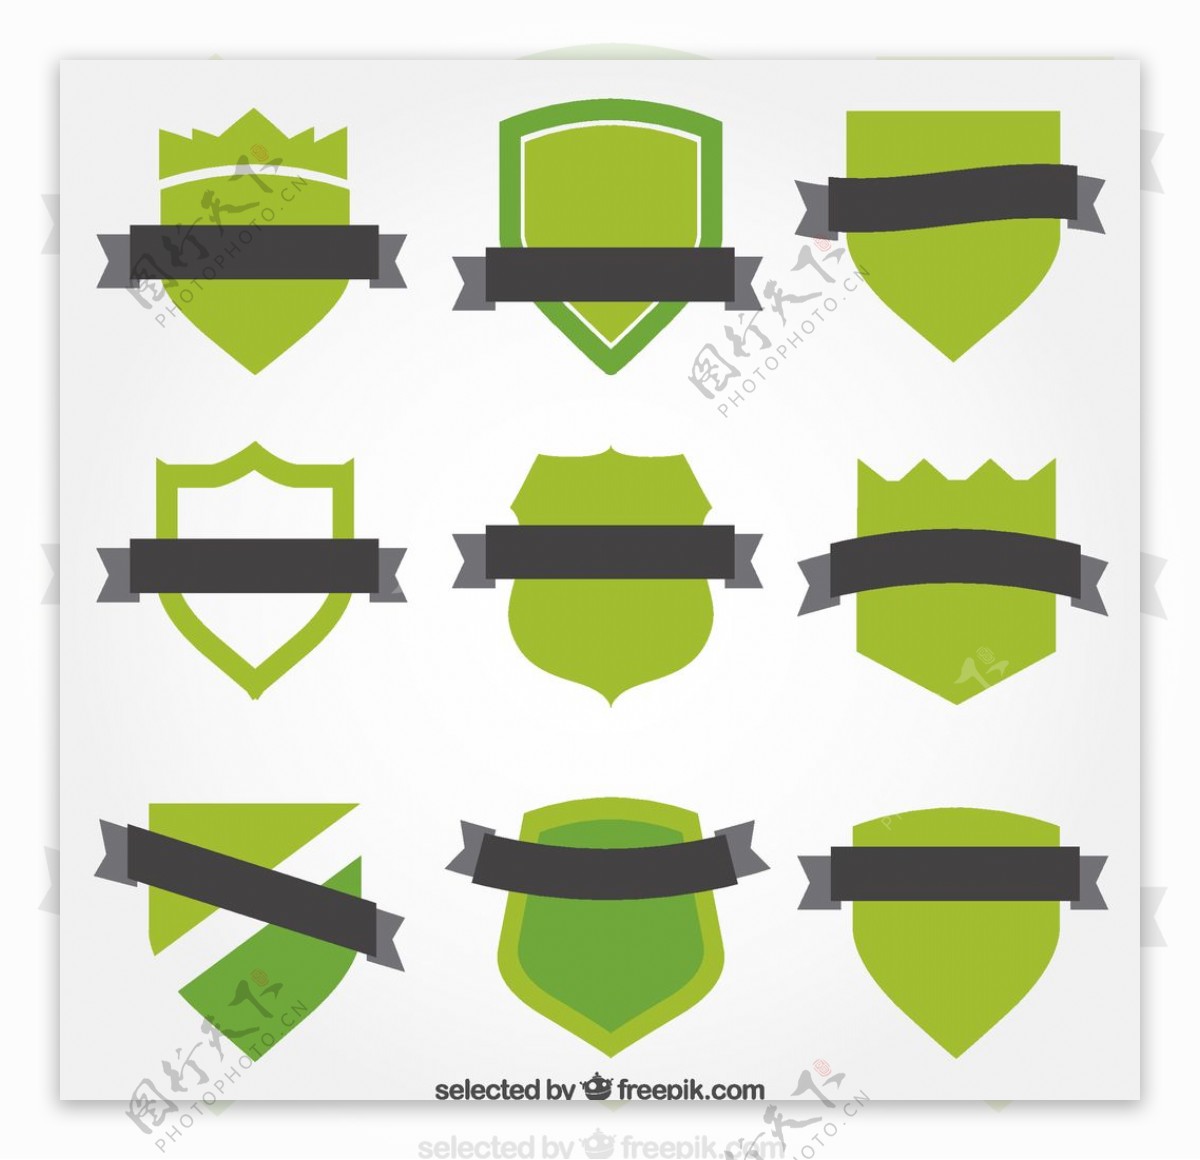 绿色丝带徽章图片